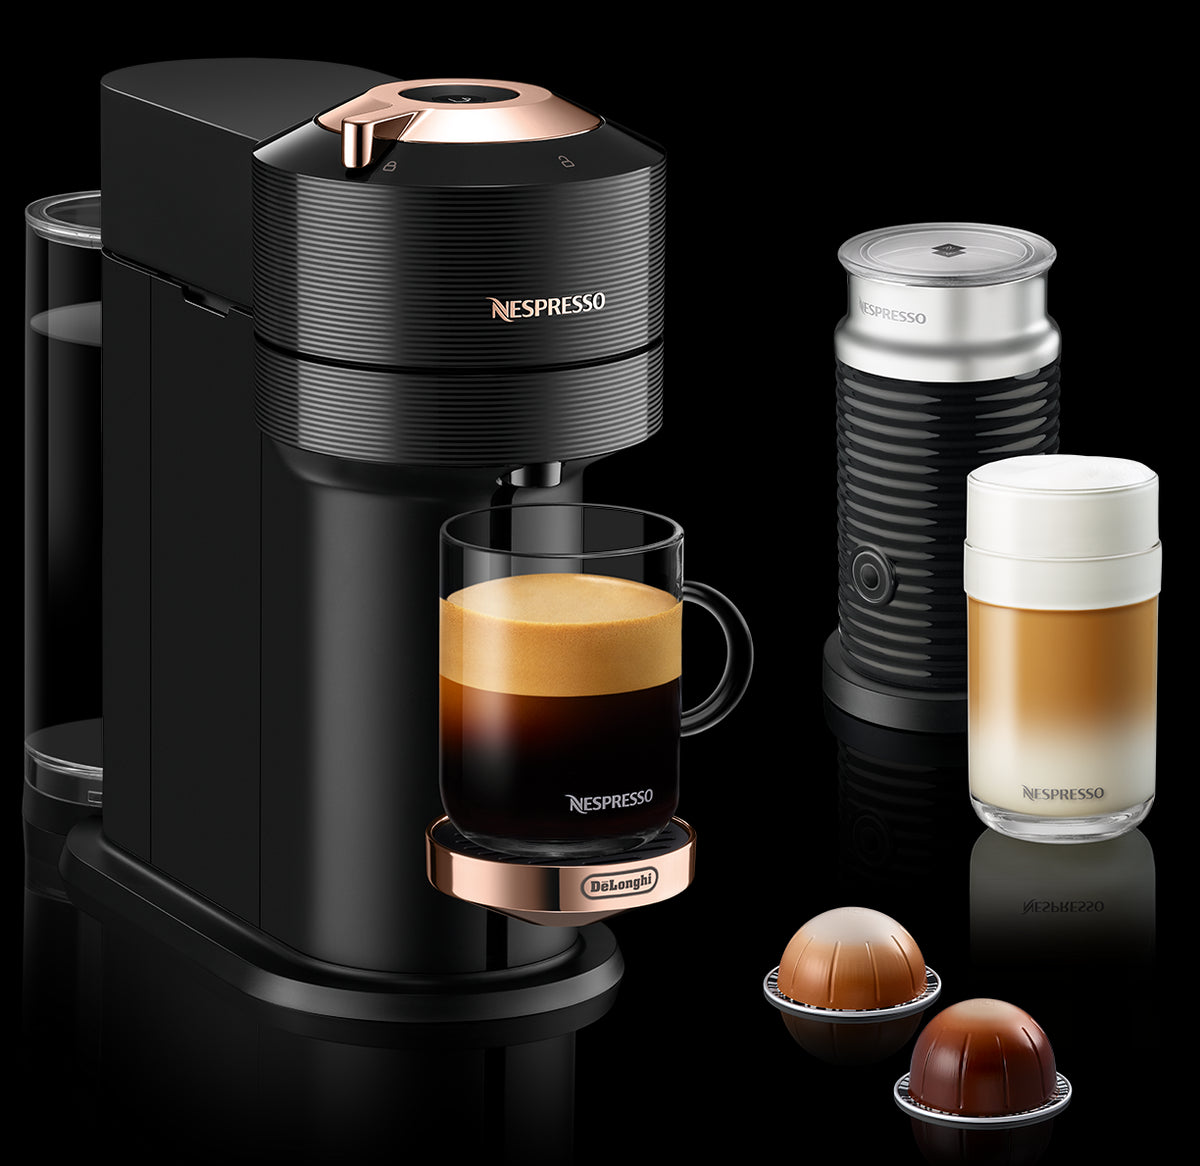 Nespresso Vertuo Next Premium Espresso Machine by DeLonghi with Aerocc